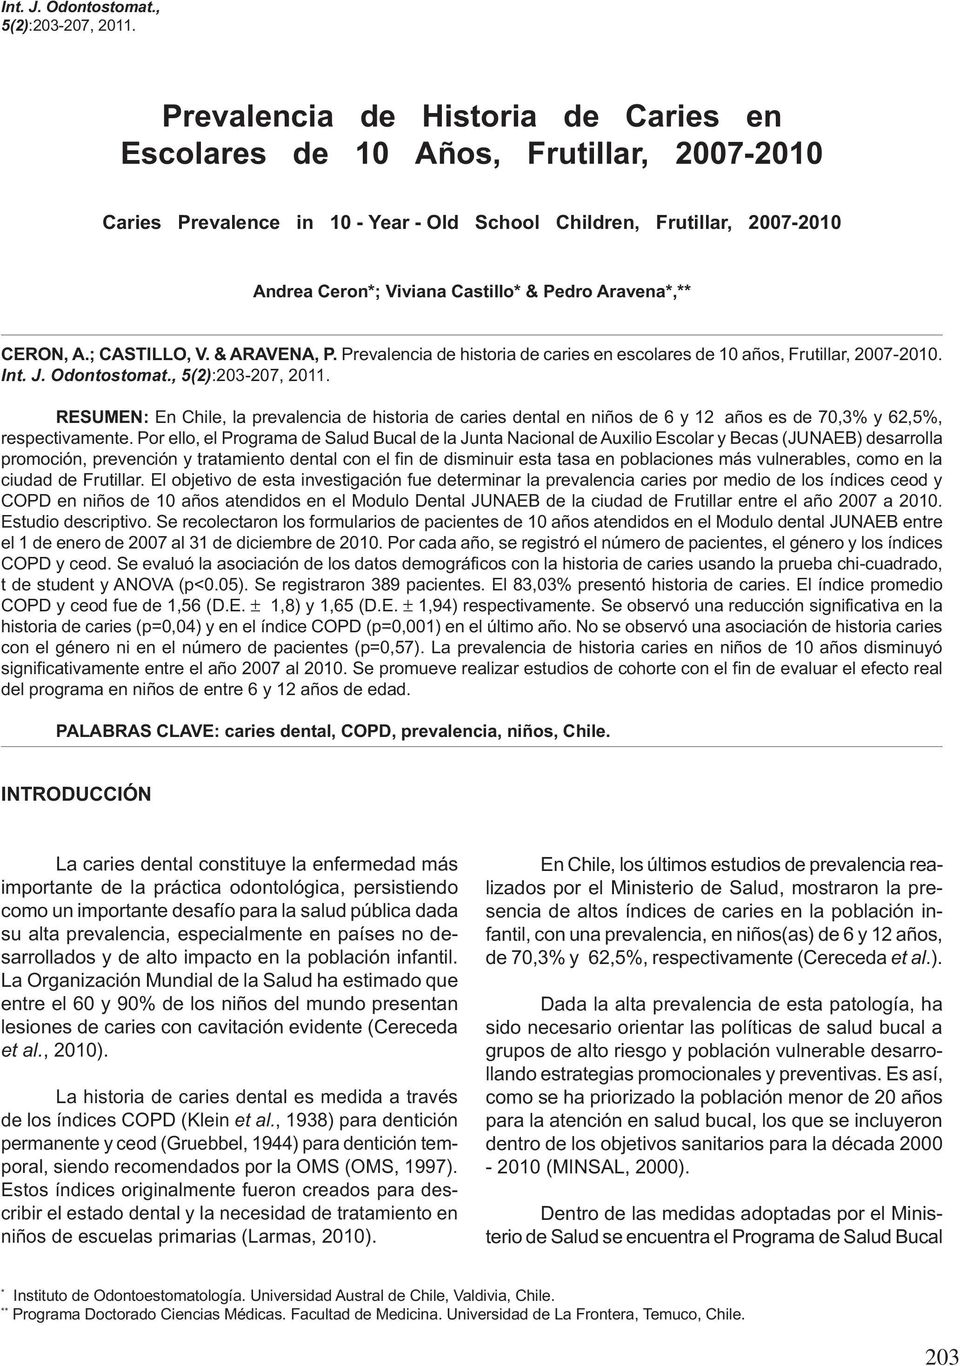 Aravena*,** CERON, A.; CASTILLO, V. & ARAVENA, P. Prevalencia de historia de caries en escolares de 10 años, Frutillar, 2007-2010.